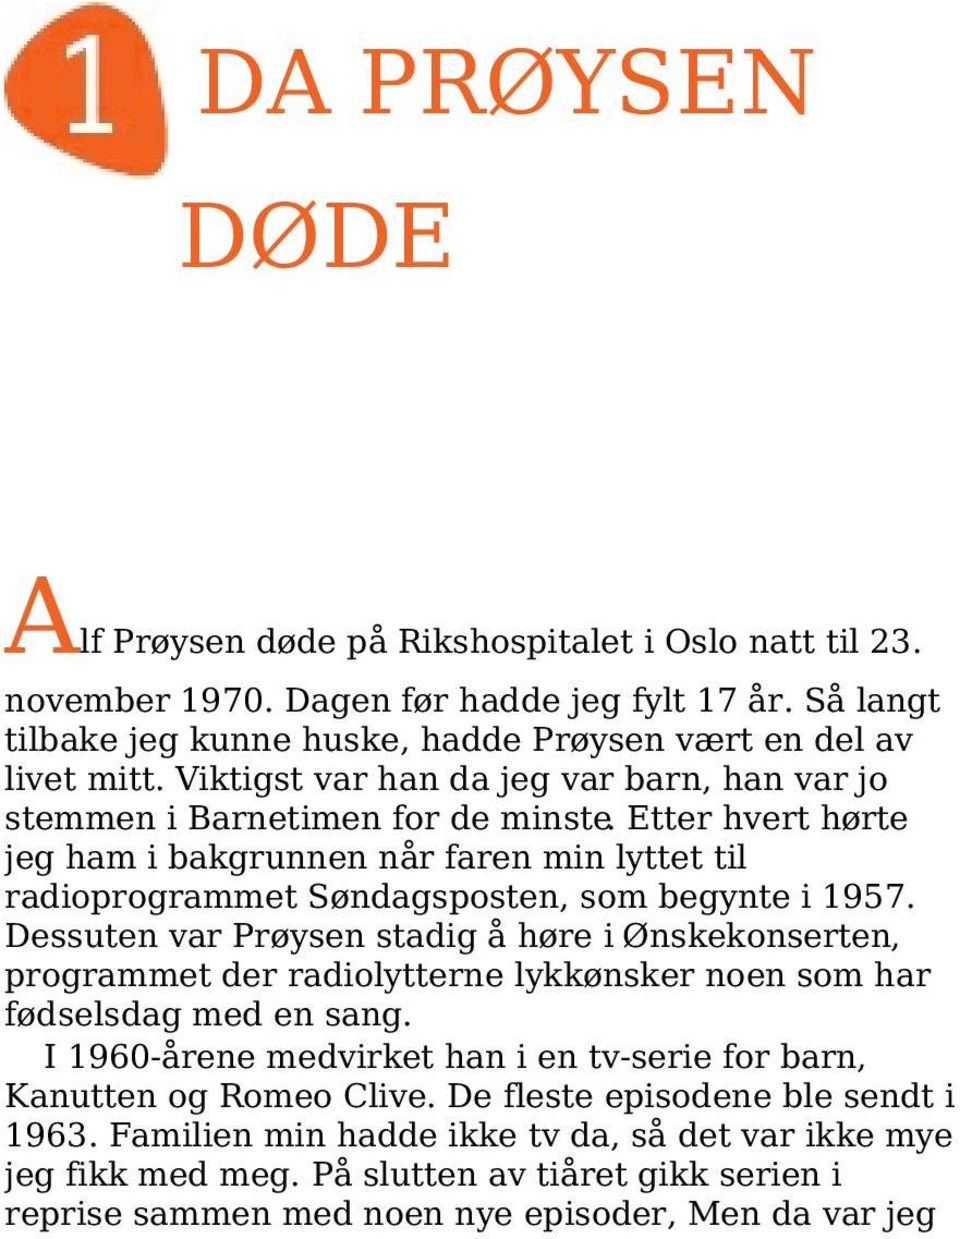 Dessuten var Prøysen stadig å høre i Ønskekonserten, programmet der radiolytterne lykkønsker noen som har fødselsdag med en sang.